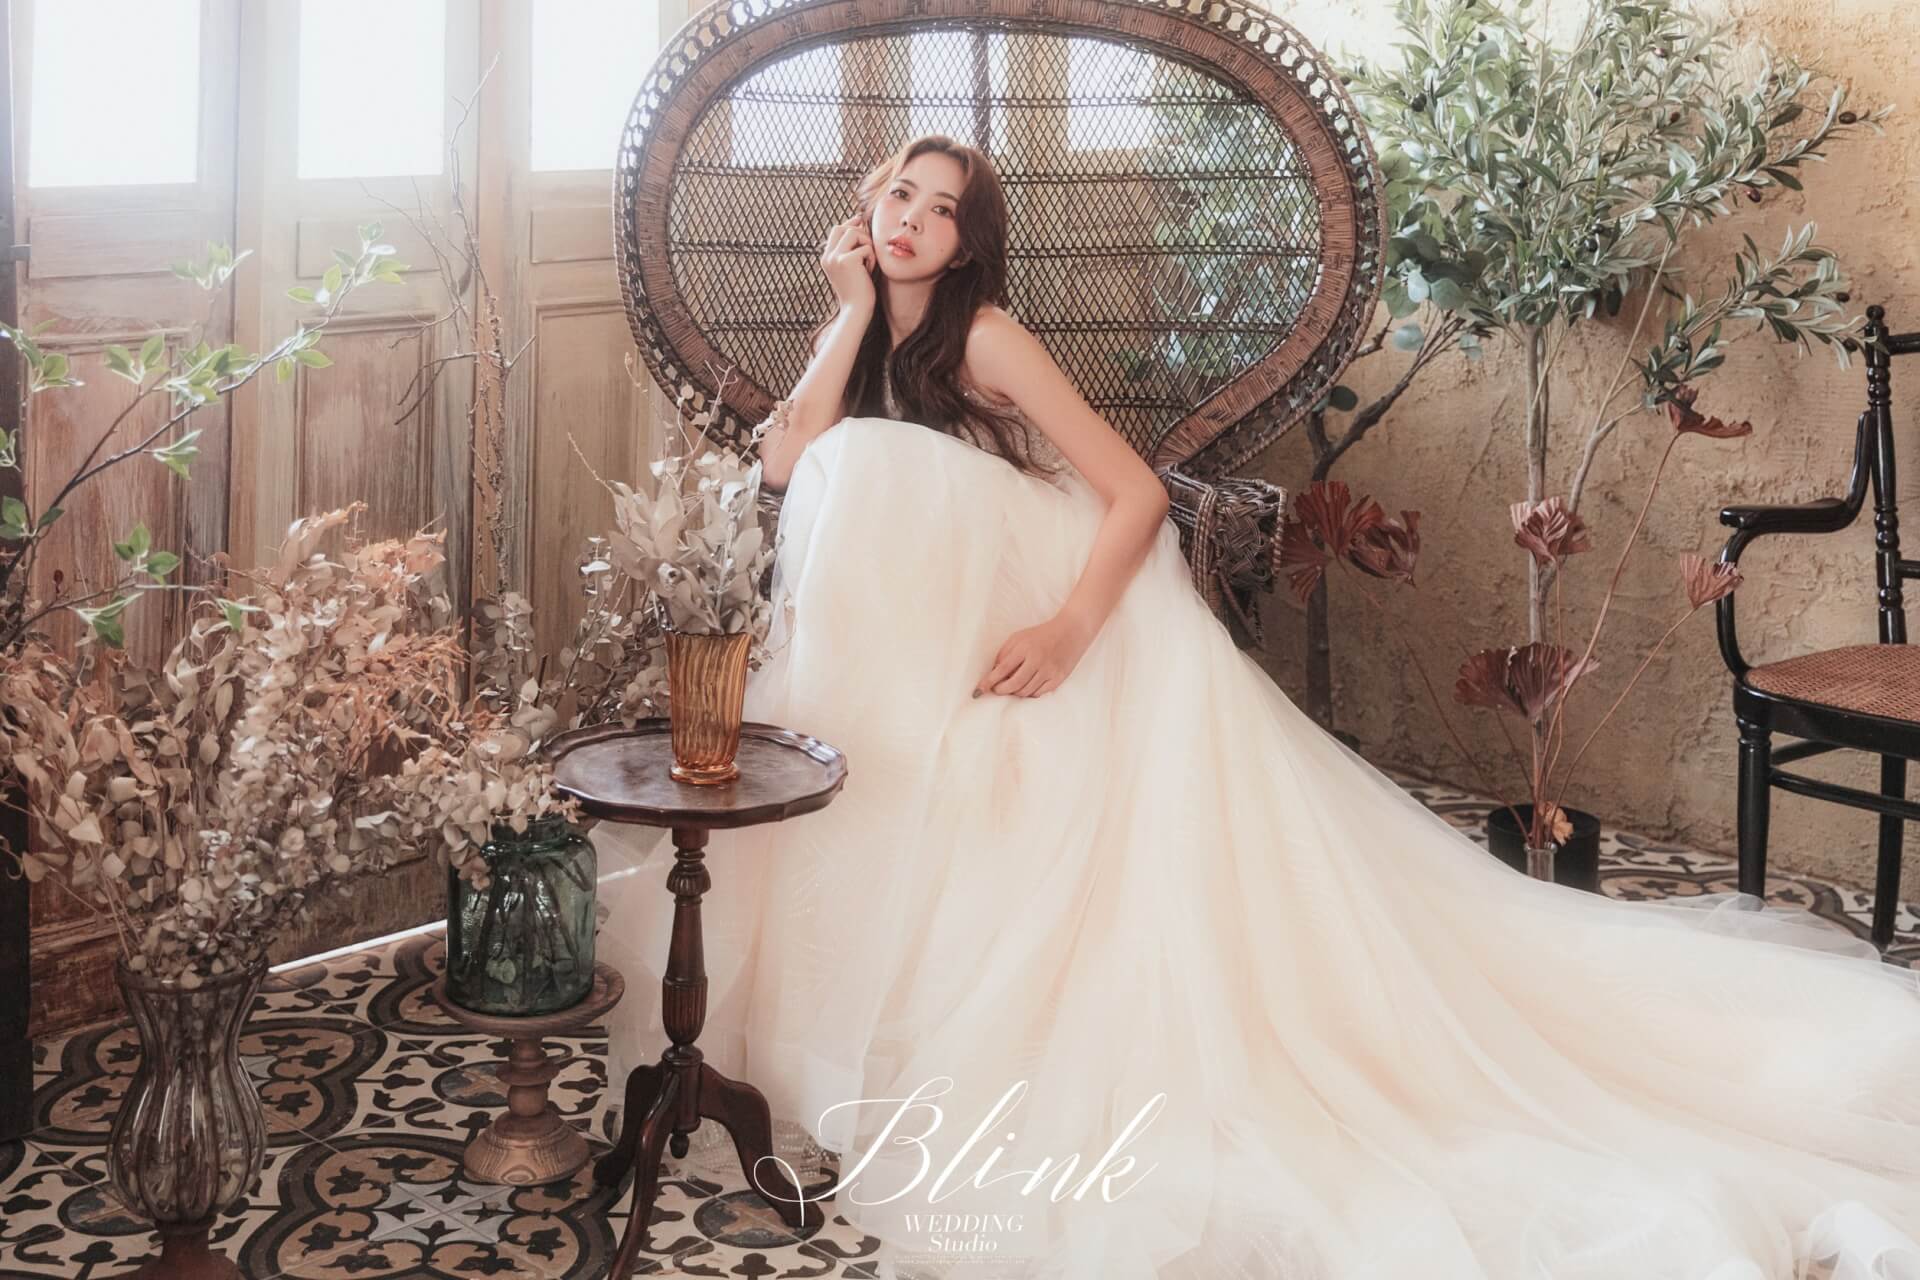 Blink studio。攝影工作室 / 個人寫真分享 | 愛情蔓延精緻婚紗 - 禮服出租 | 婚紗推薦 | 台中婚紗